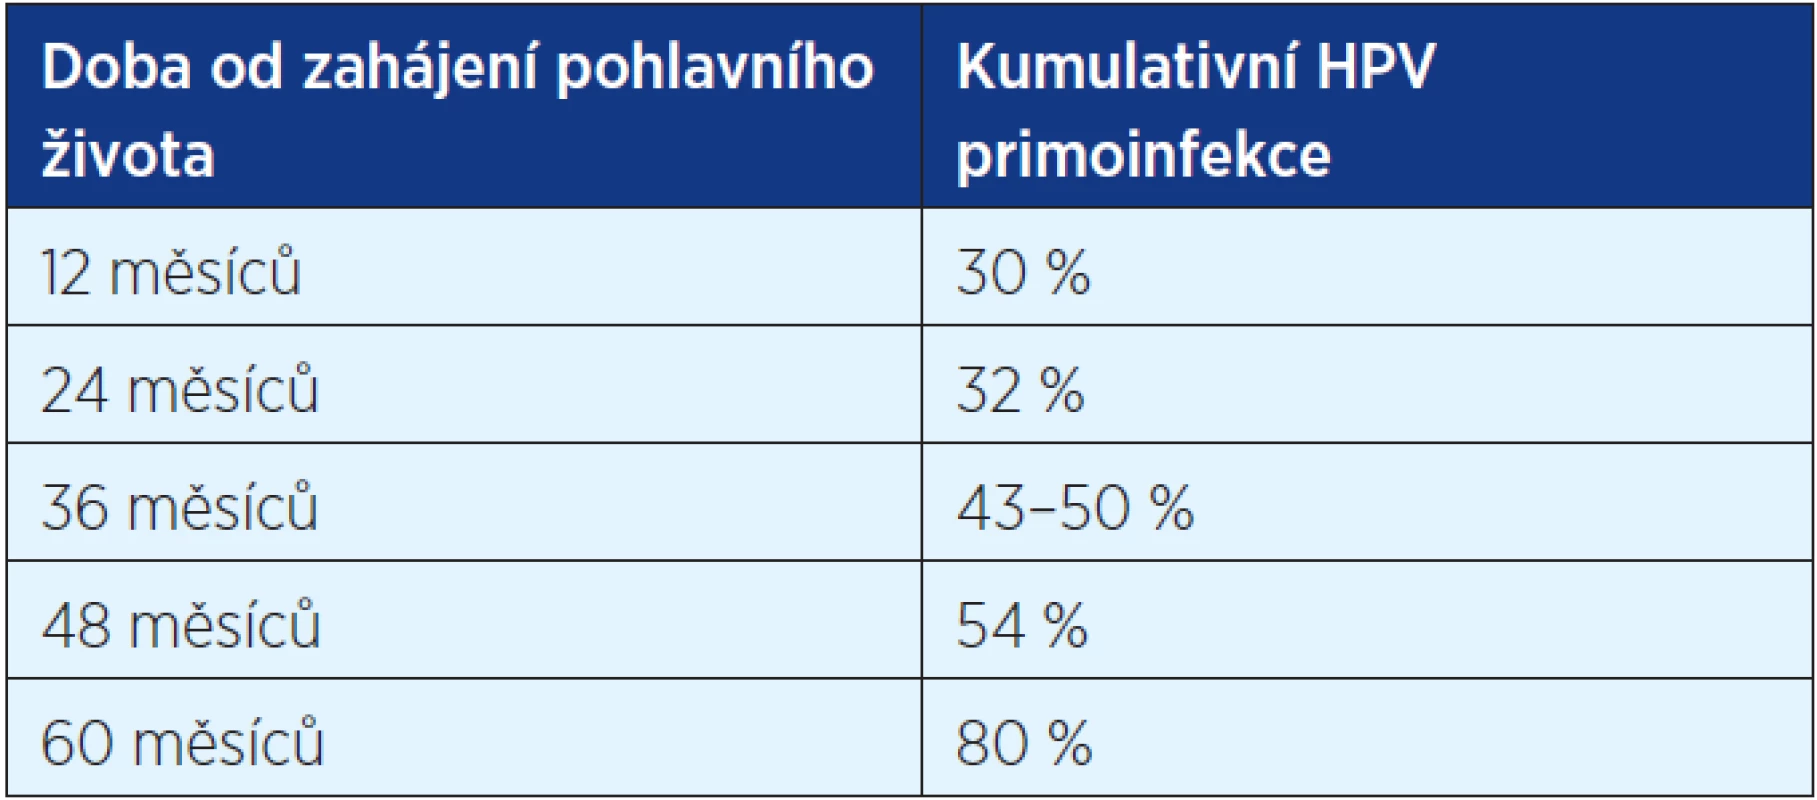 Kumulativní HPV primoinfekce u žen po zahájení pohlavního života (3, 5)